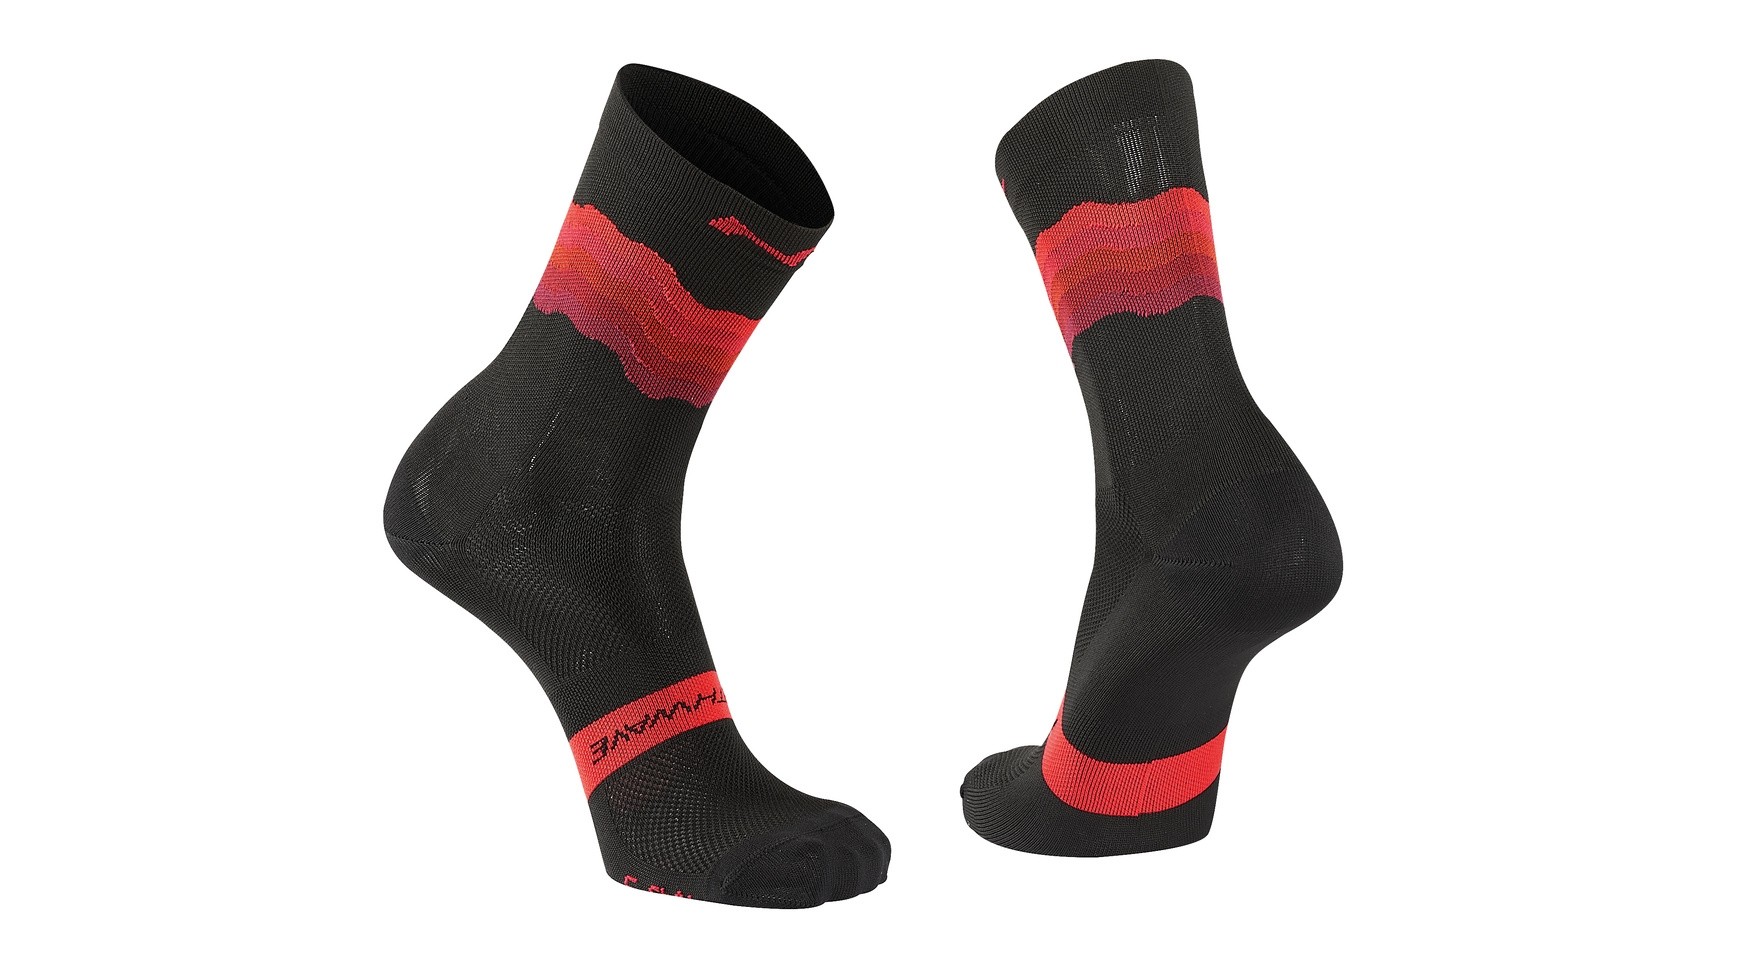 Northwave switch chaussettes de cyclisme noir rouge